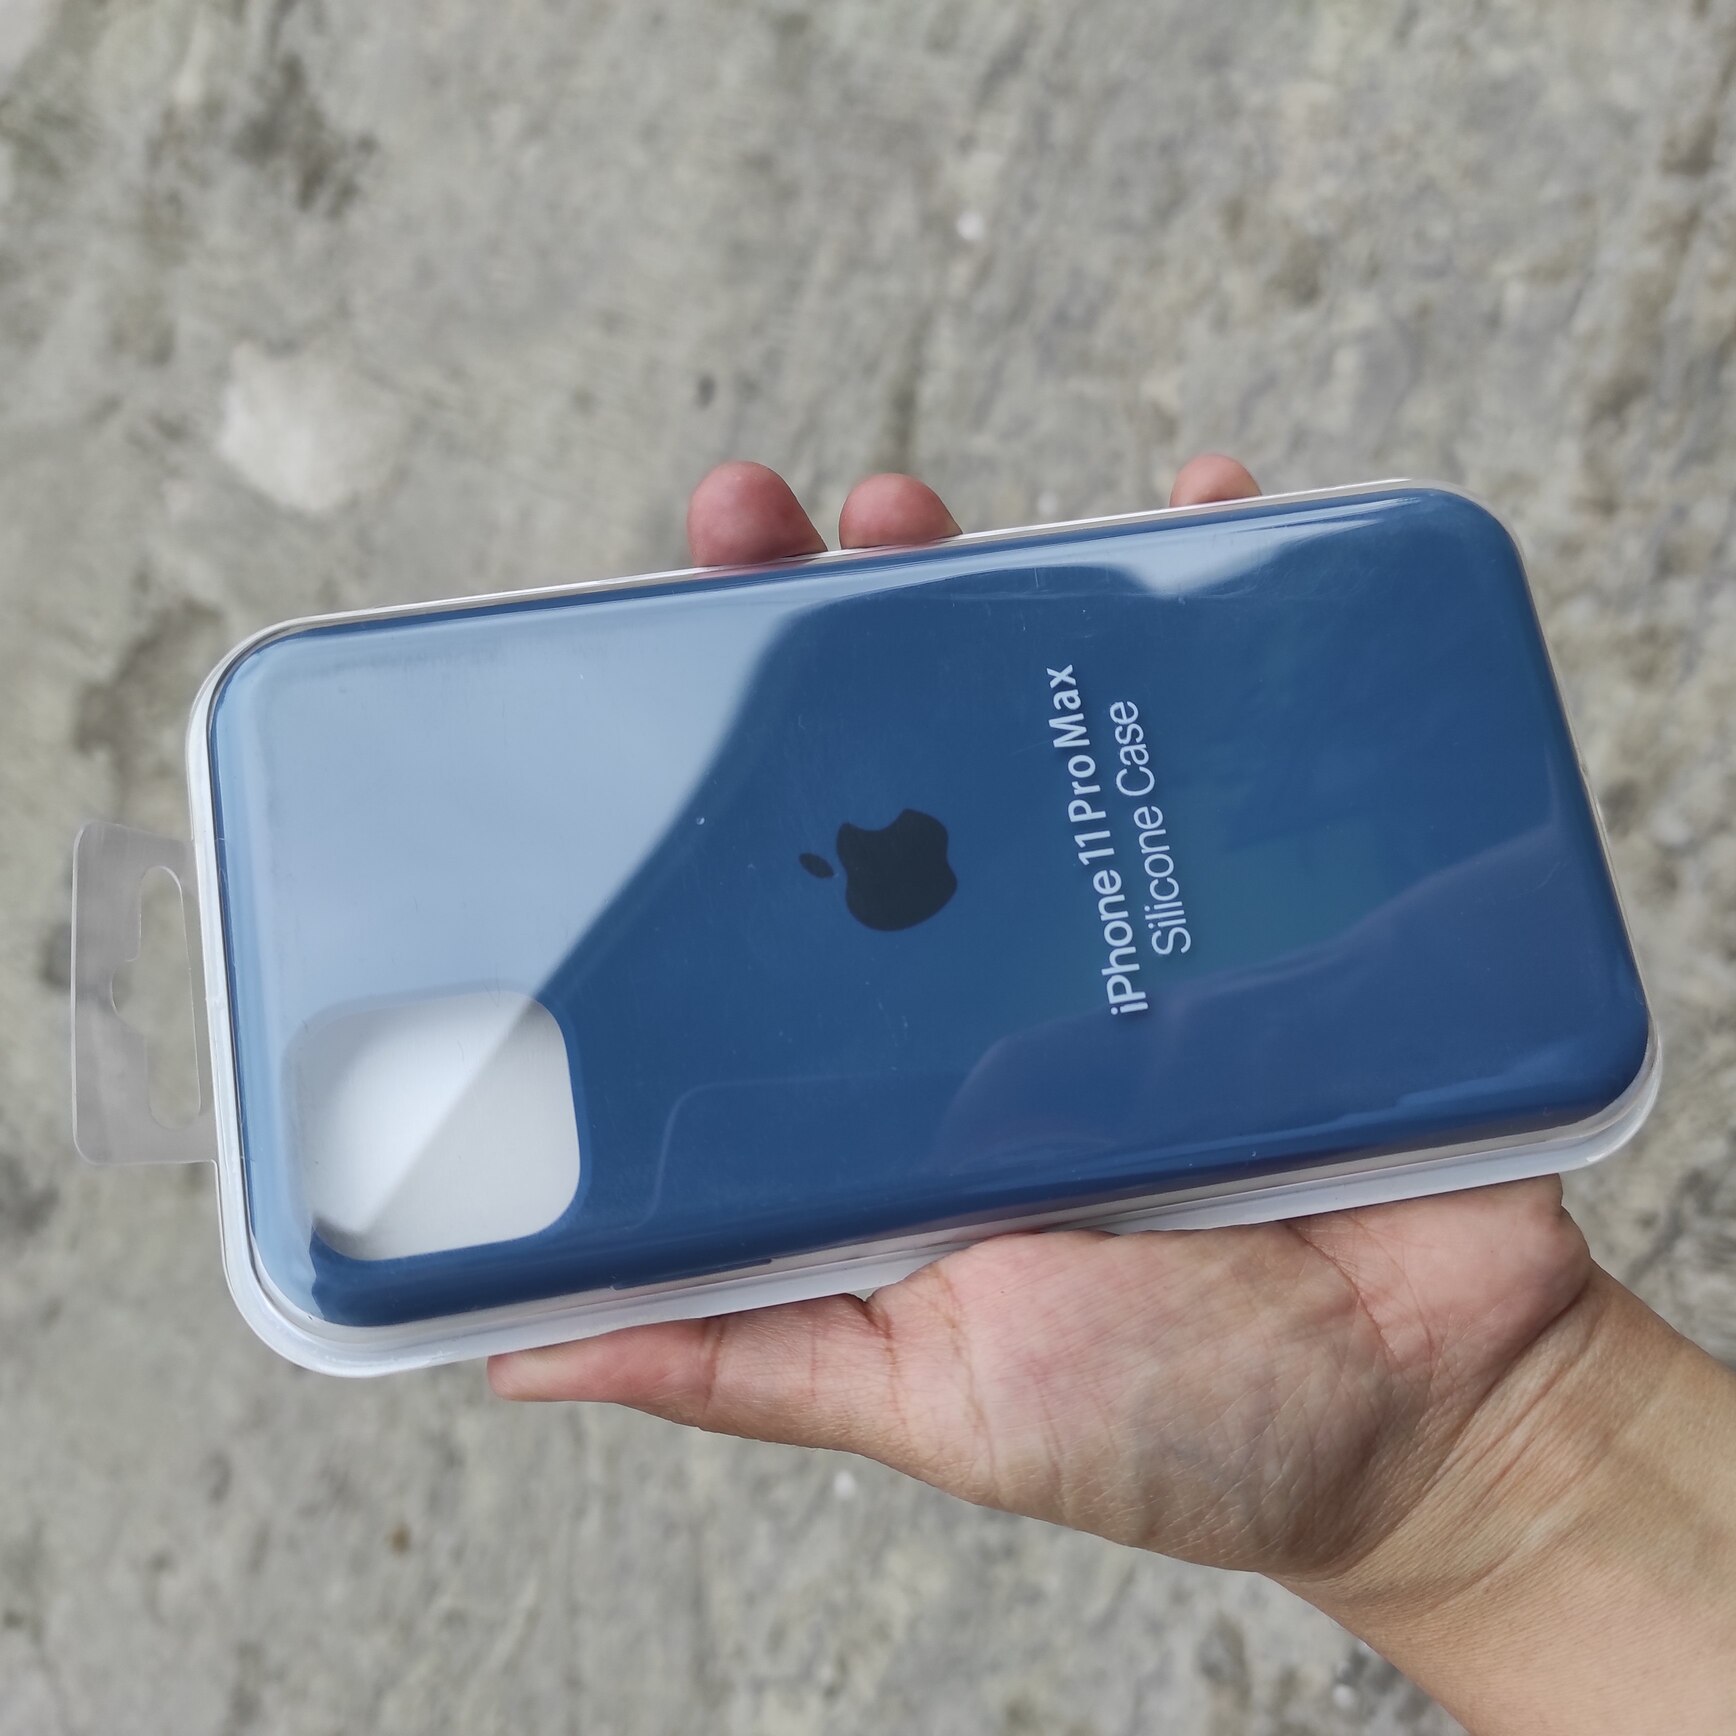 Casing Hardcase Silikon Original iPhone 11 Pro Max Premium